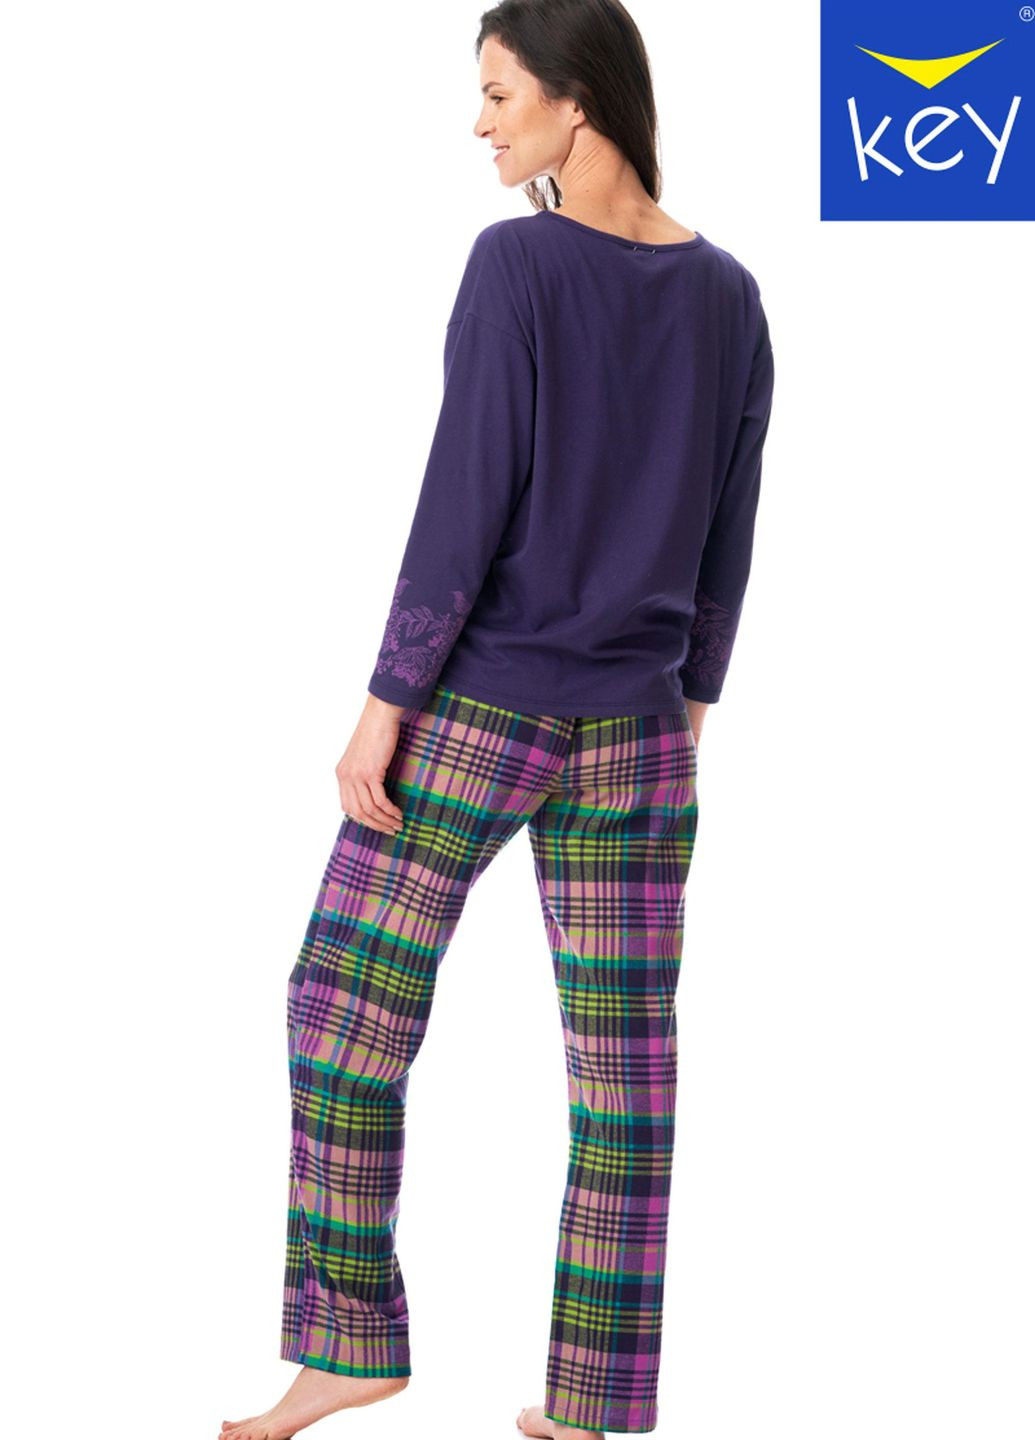 Фиолетовая пижама женская xl mix принт lns 410 b23 Key